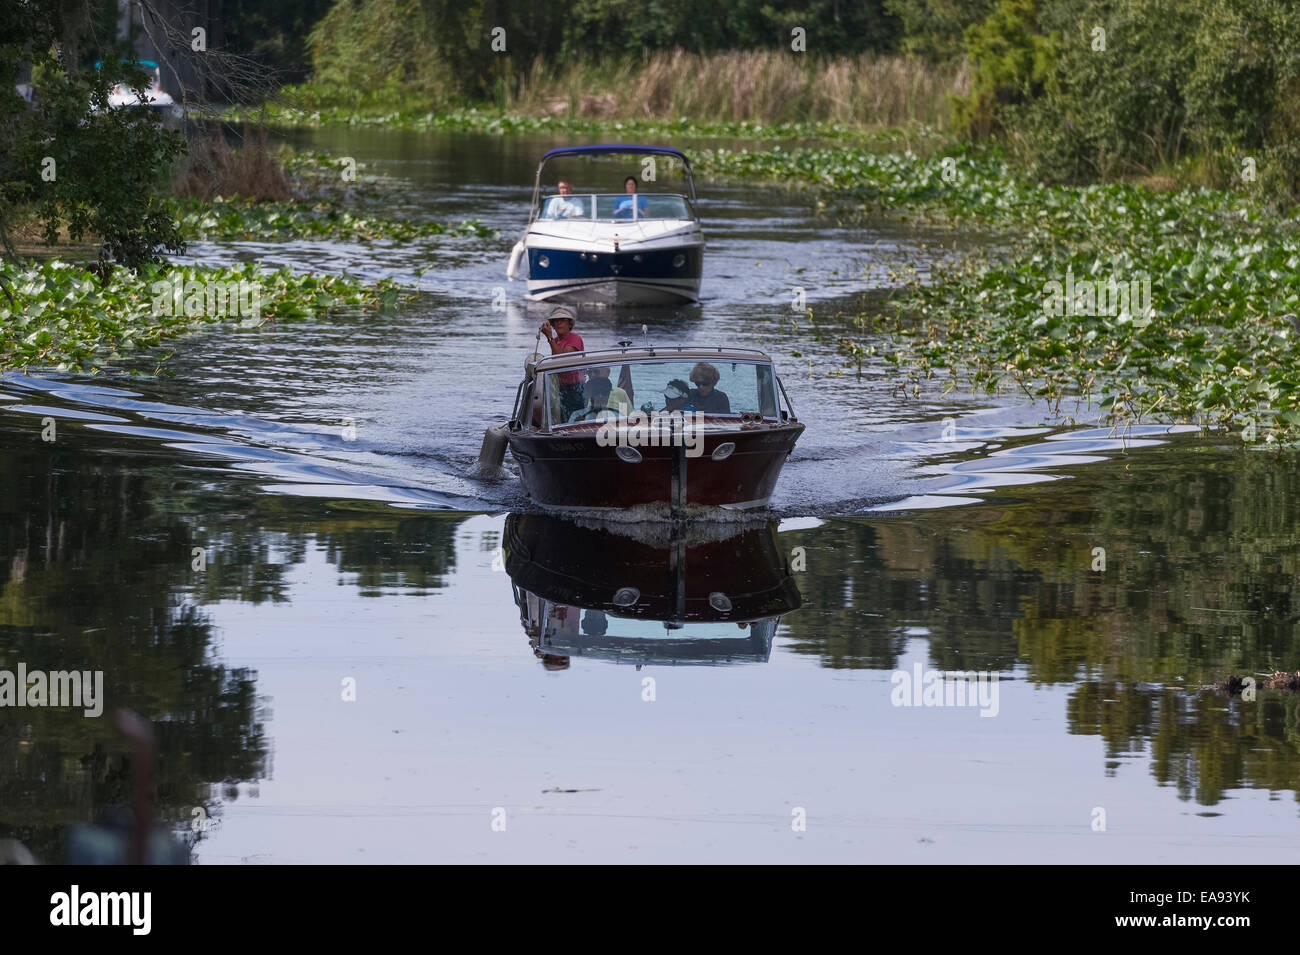 Im Ruhestand, Familie und Freunde, Bootfahren am Fluss Haines Creek in Lake County, Florida USA Stockfoto